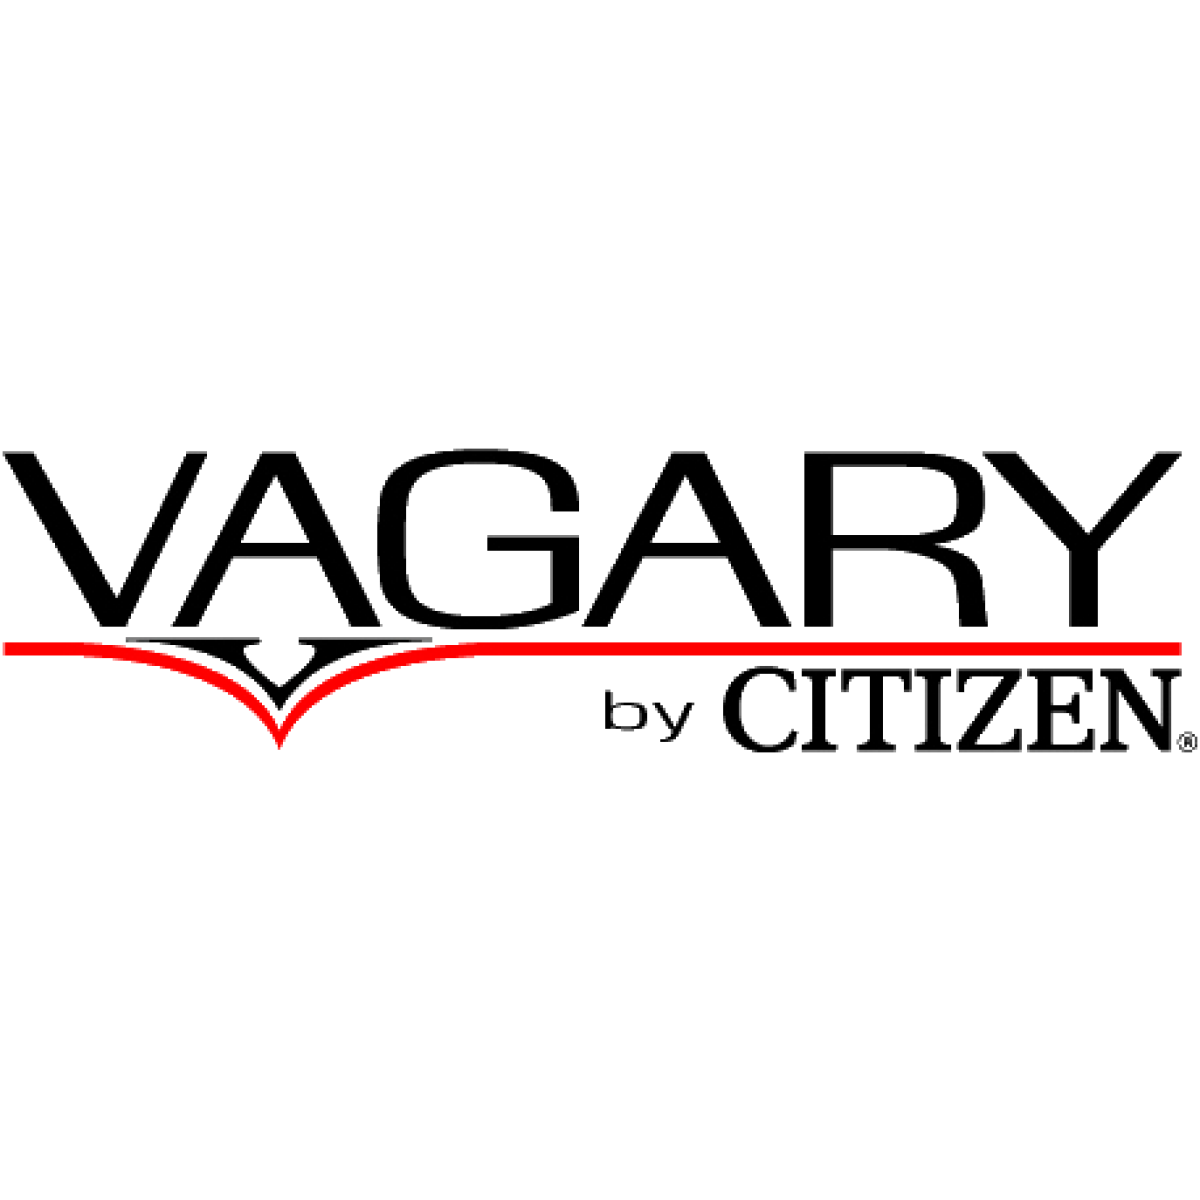 Logo Vagary